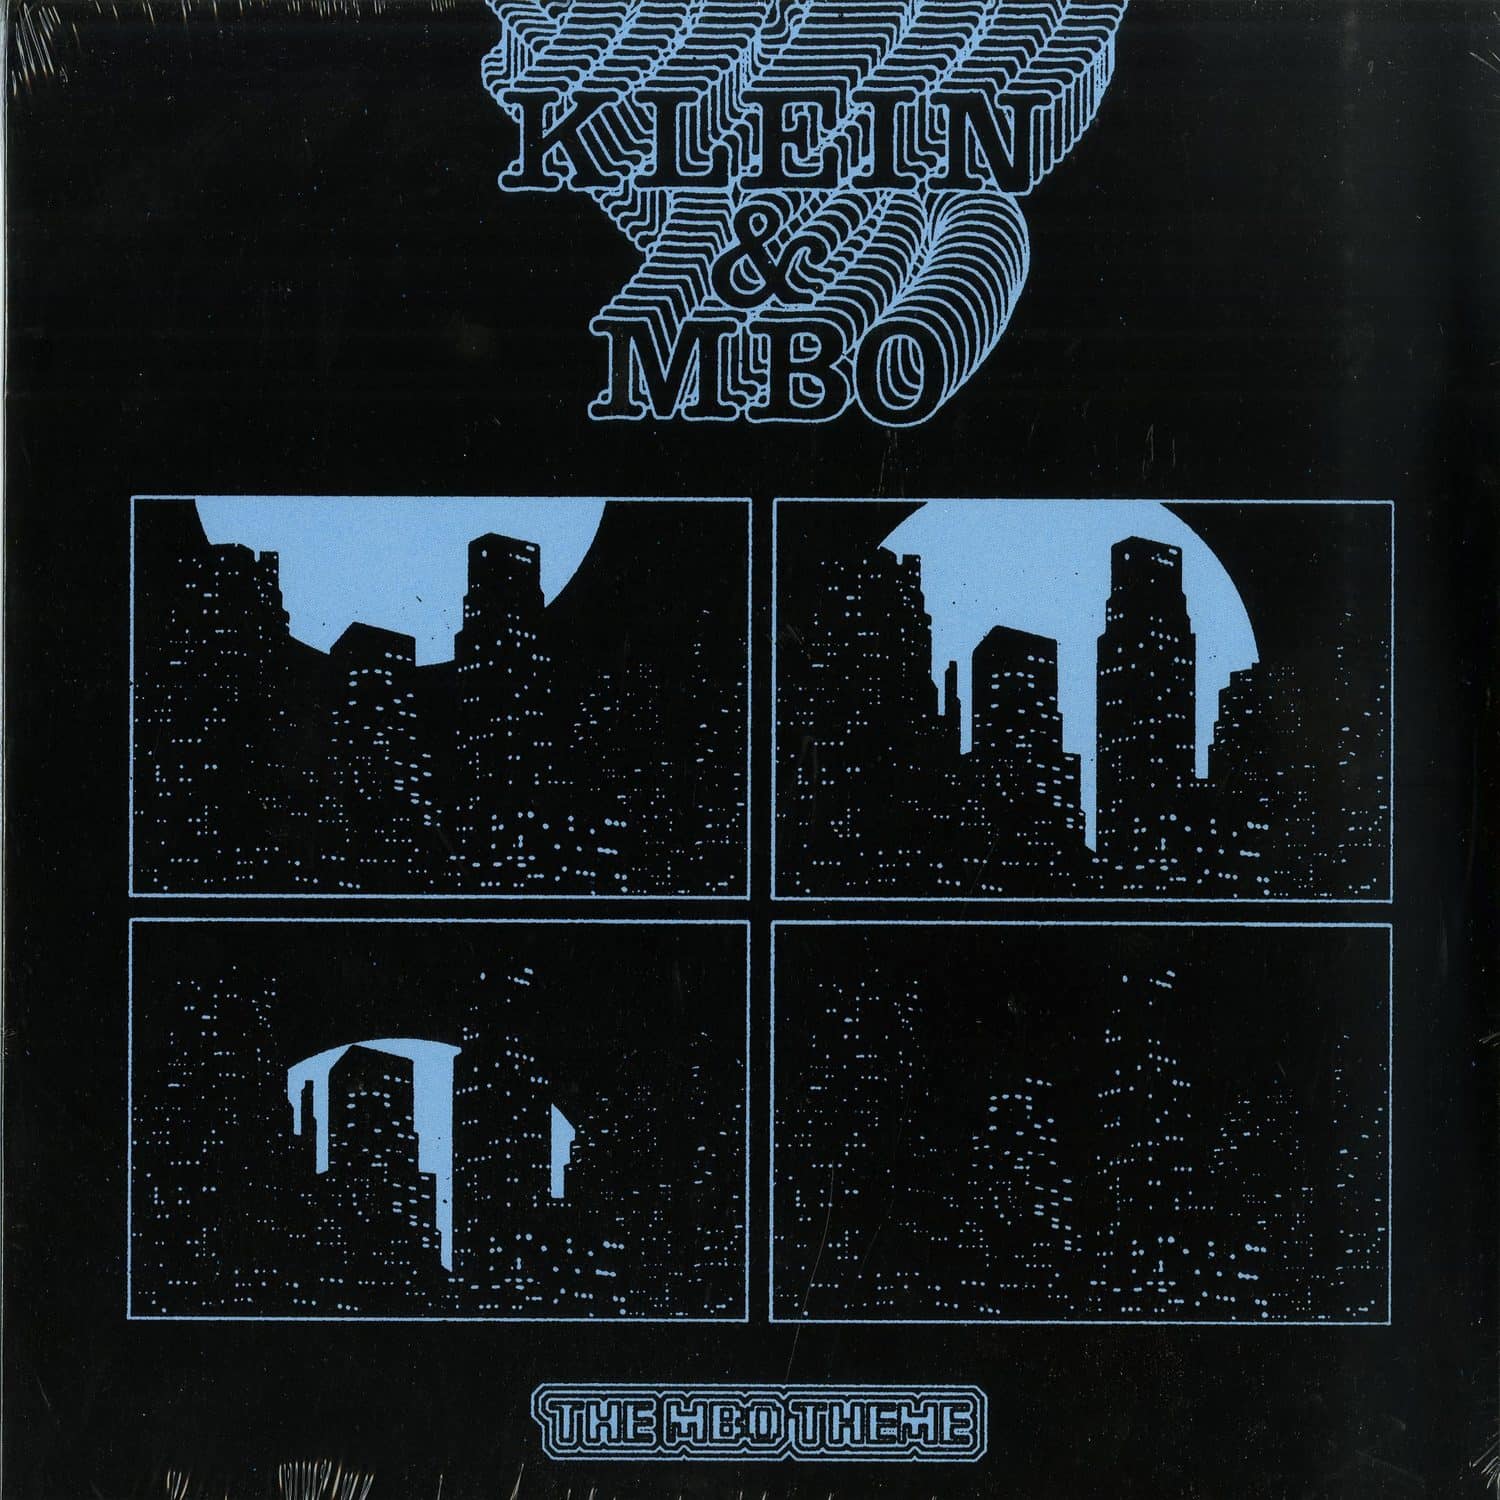 KLEIN & MBO - THE MBO THEME